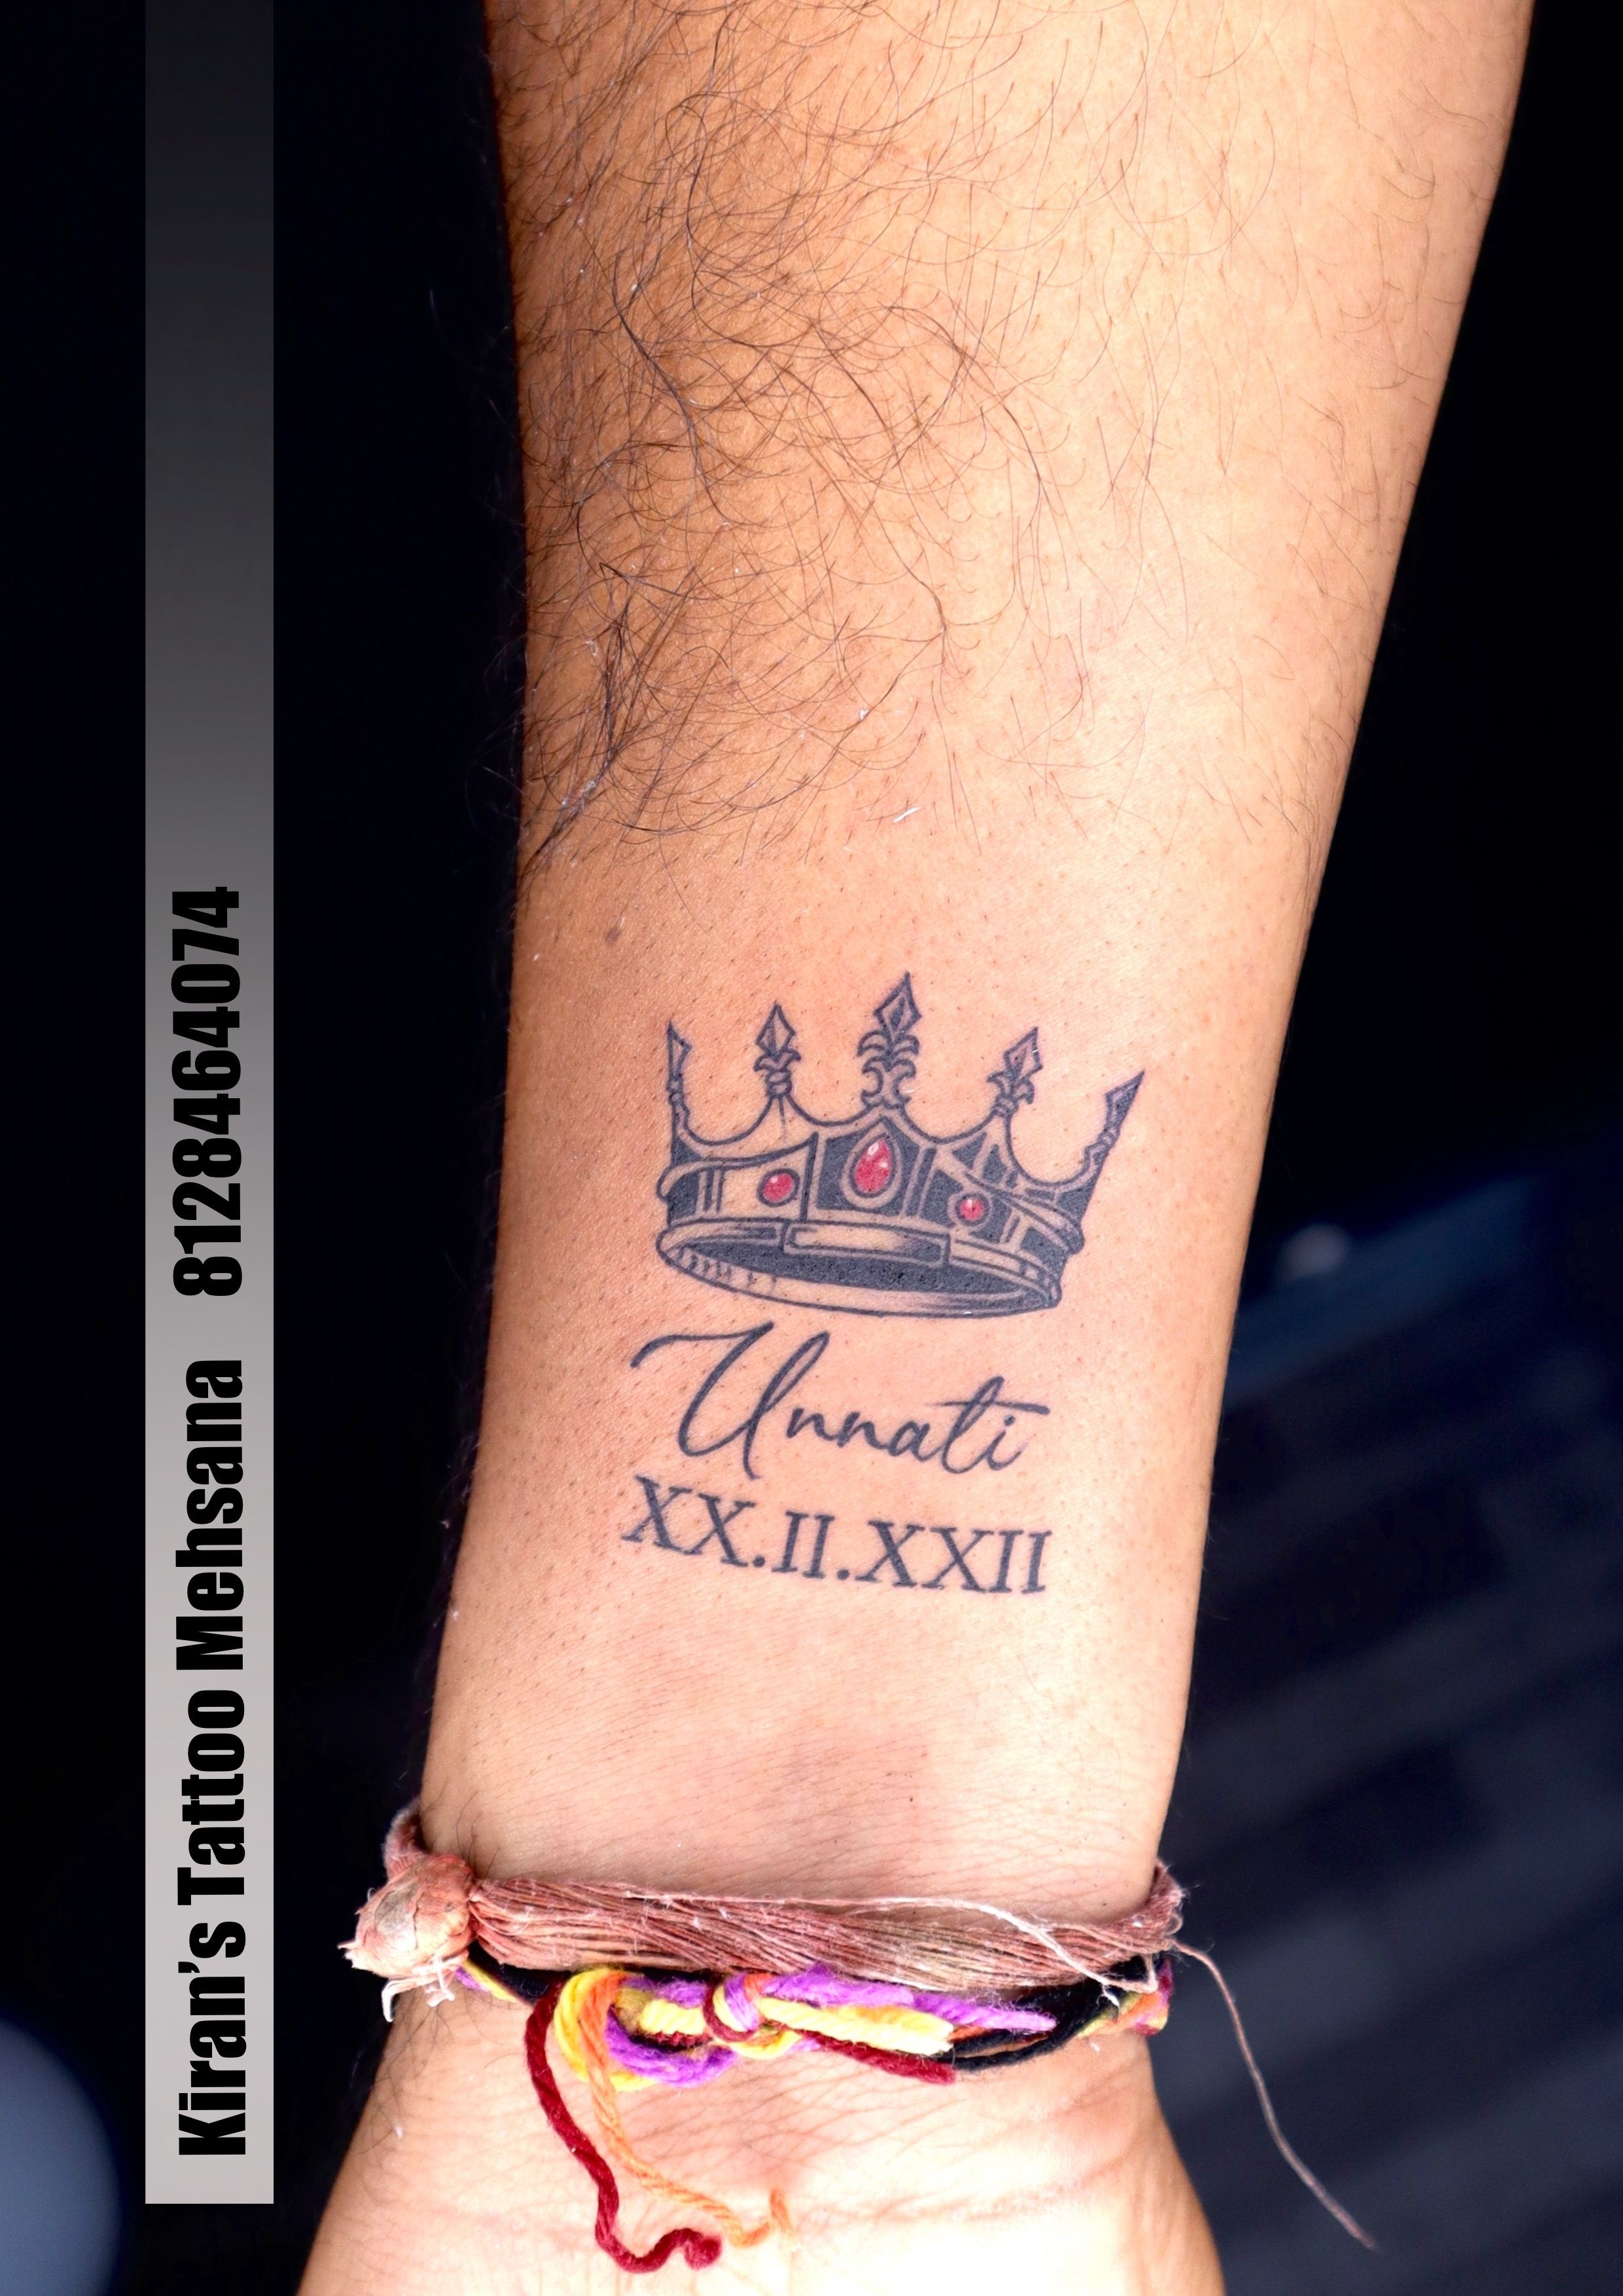 Tattoo uploaded by Catari Tattoo • Done by Catarina Quintas • Tattoodo